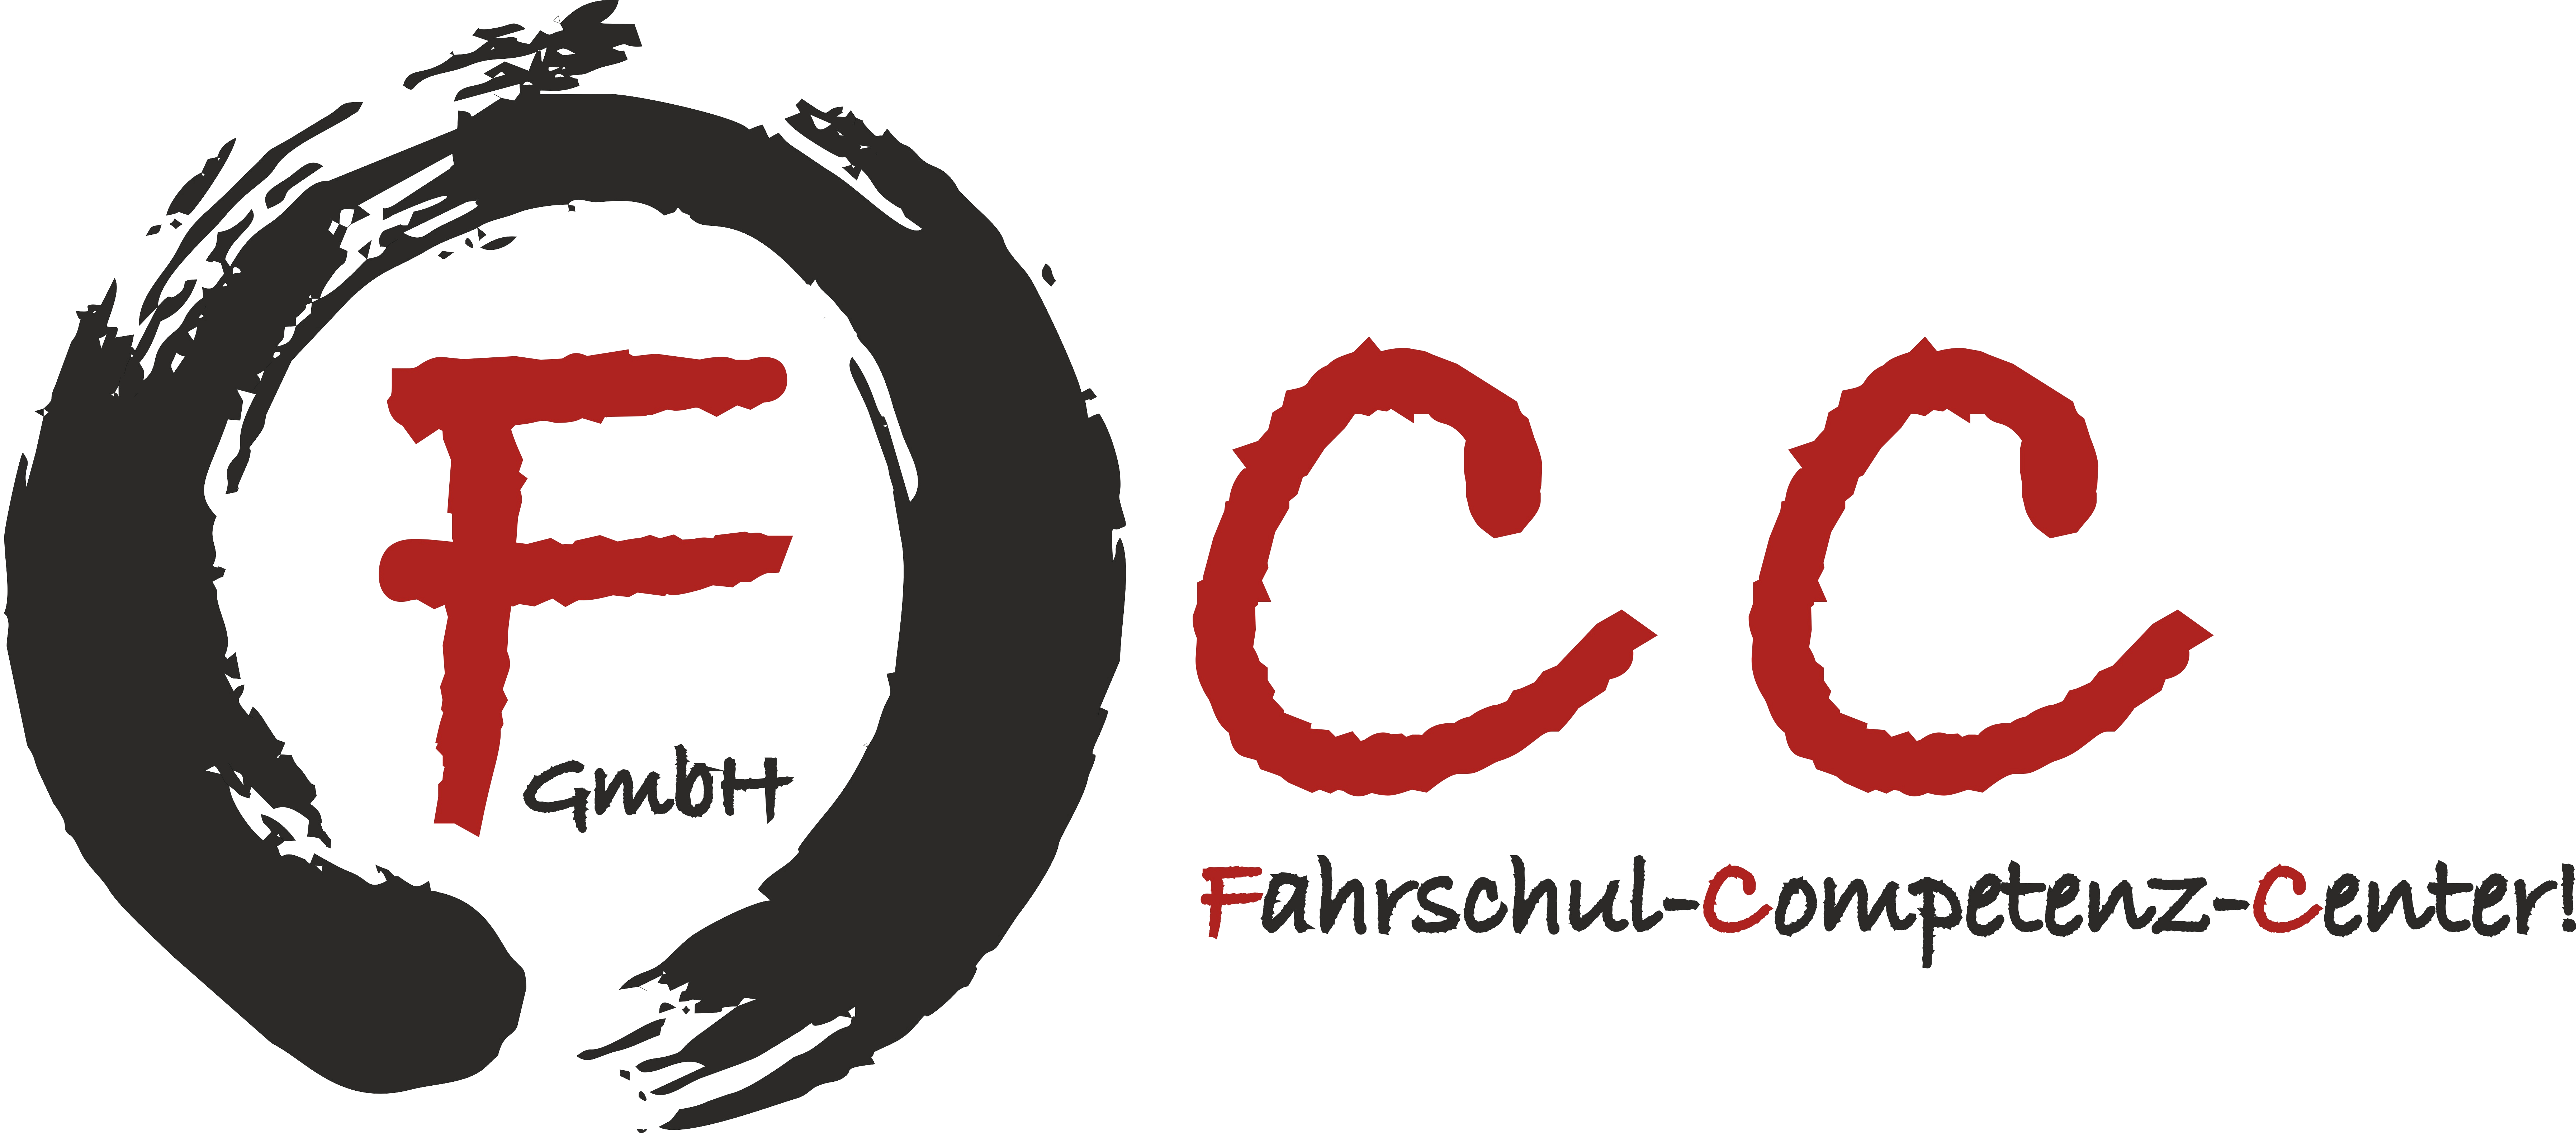 Logo-FCC-GmbH